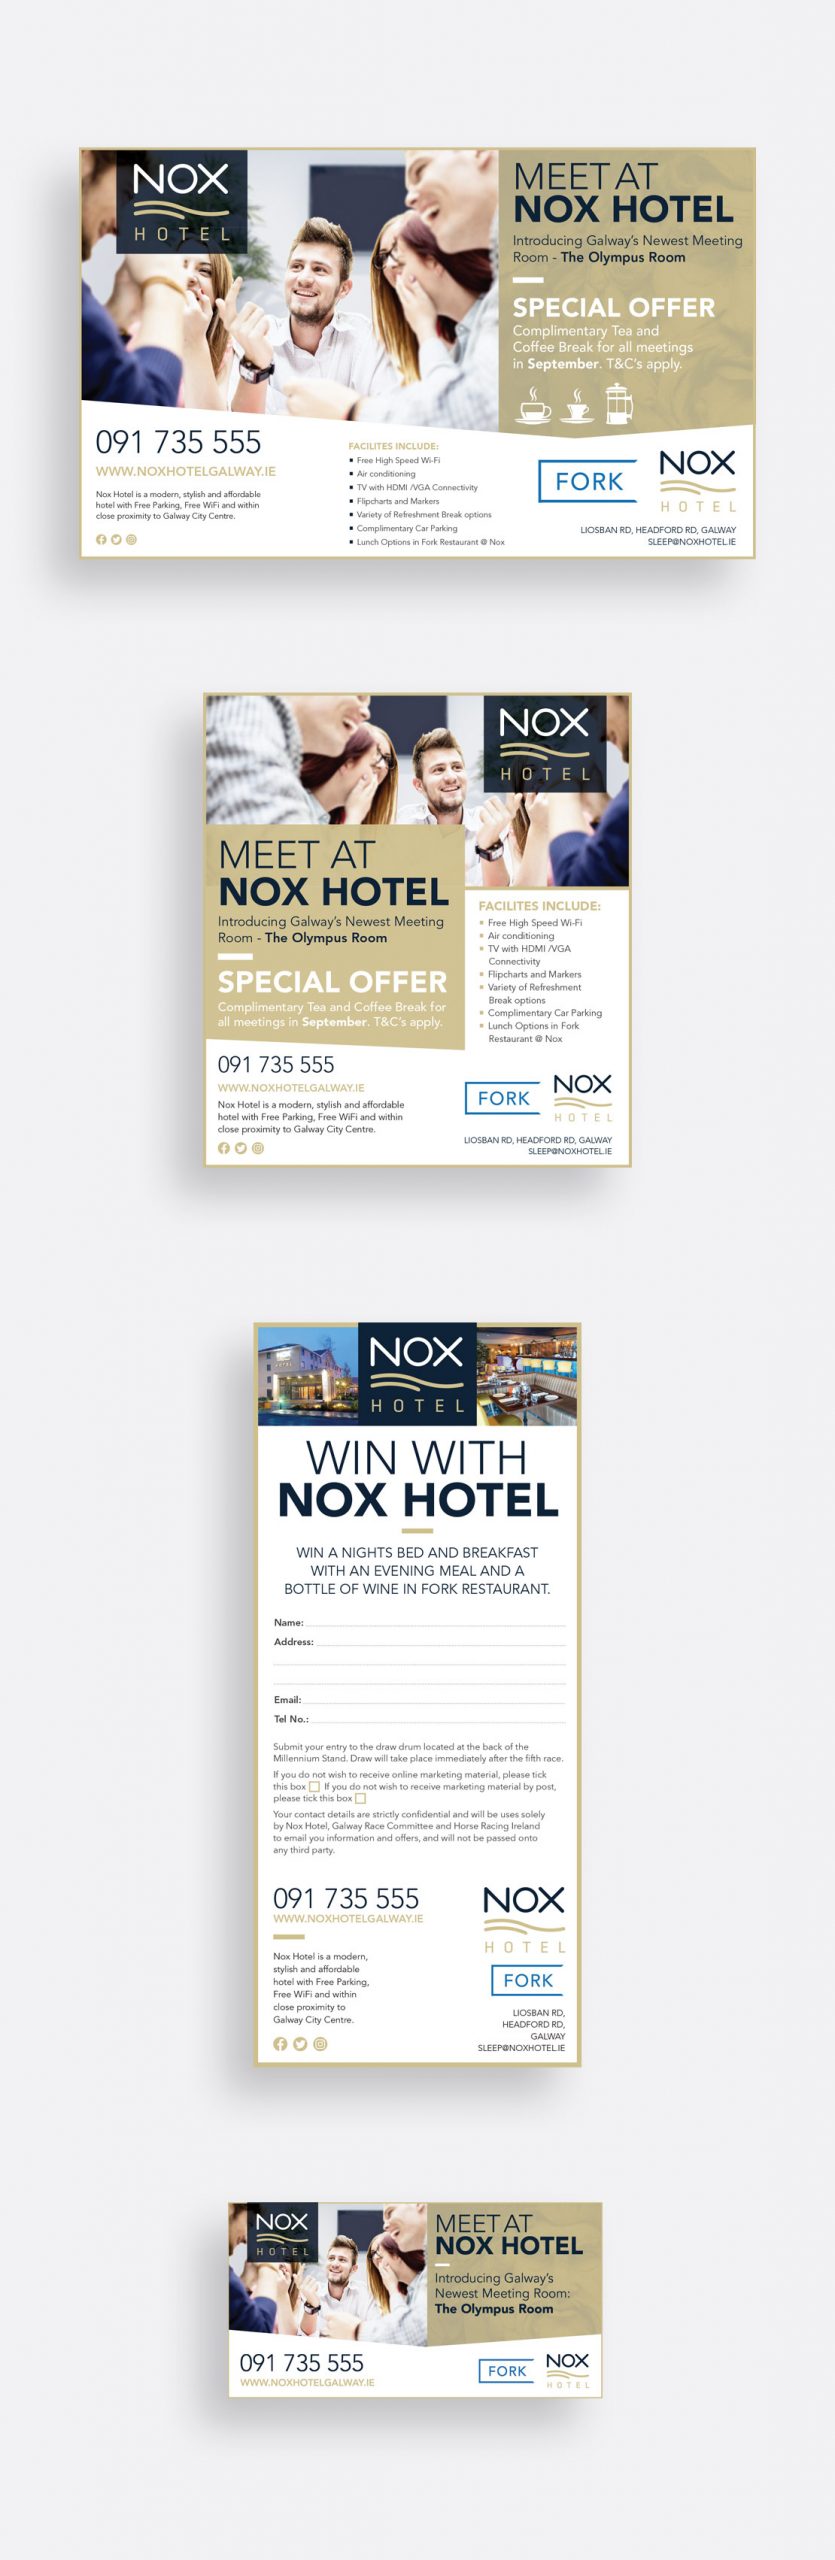 Nox Hotel 'Meet at Nox' print and social media campaign